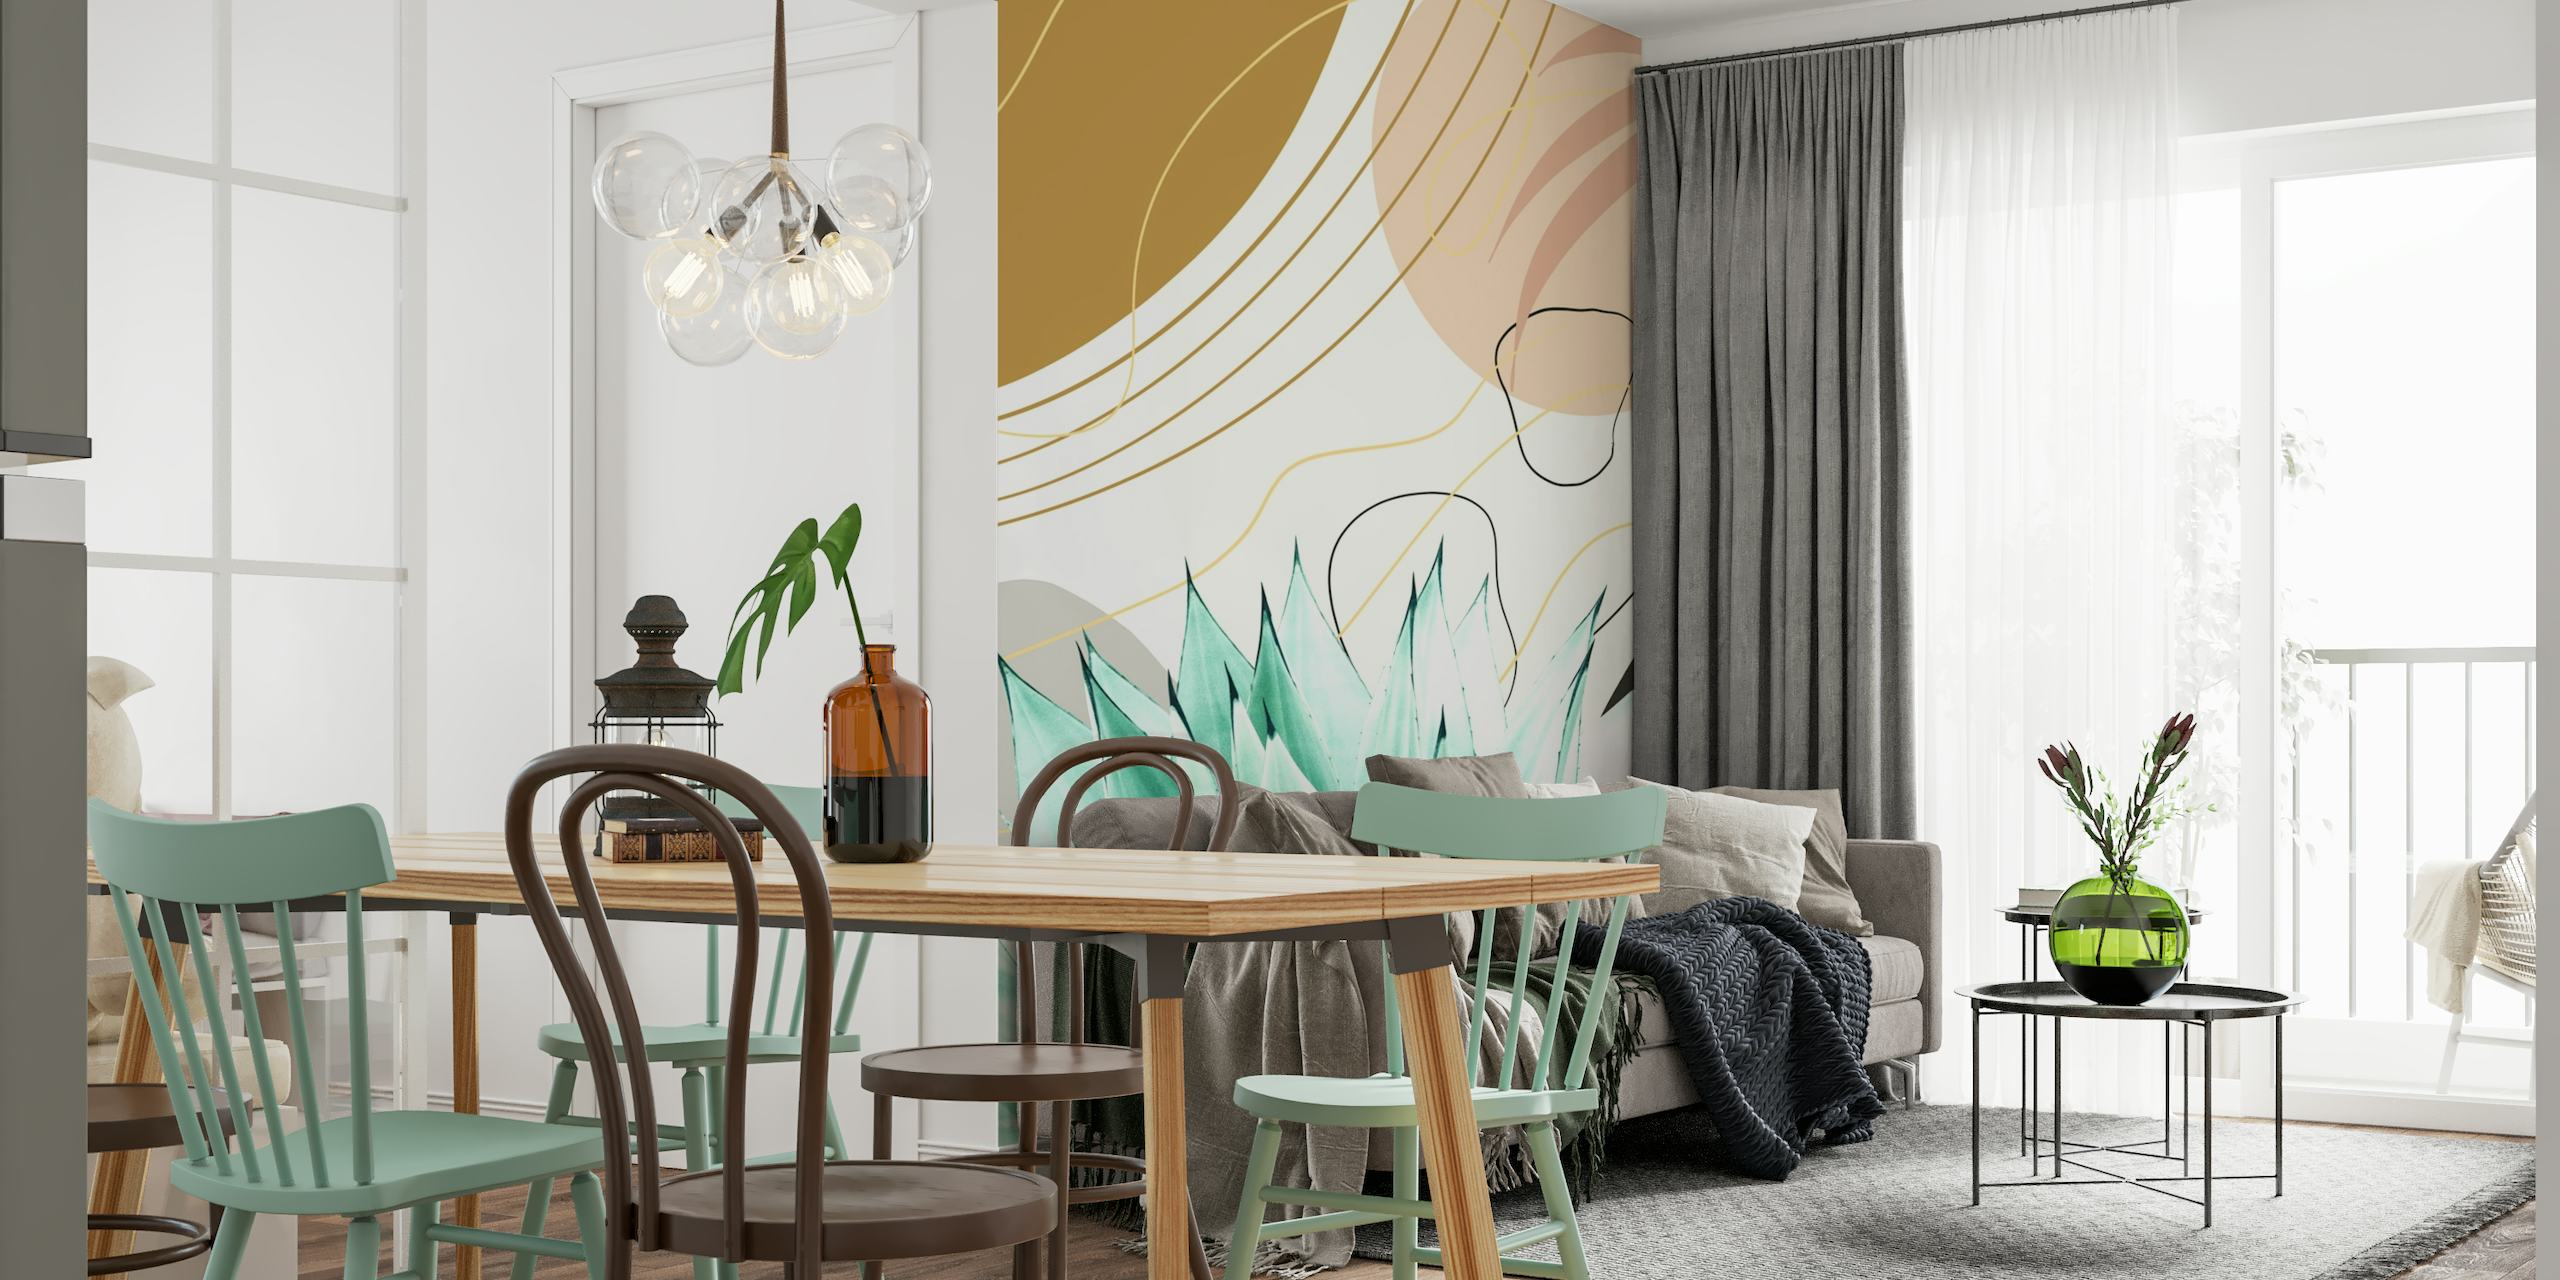 Planta de agave estilizada em um design abstrato com detalhes em cinza, creme e dourado em um mural de parede